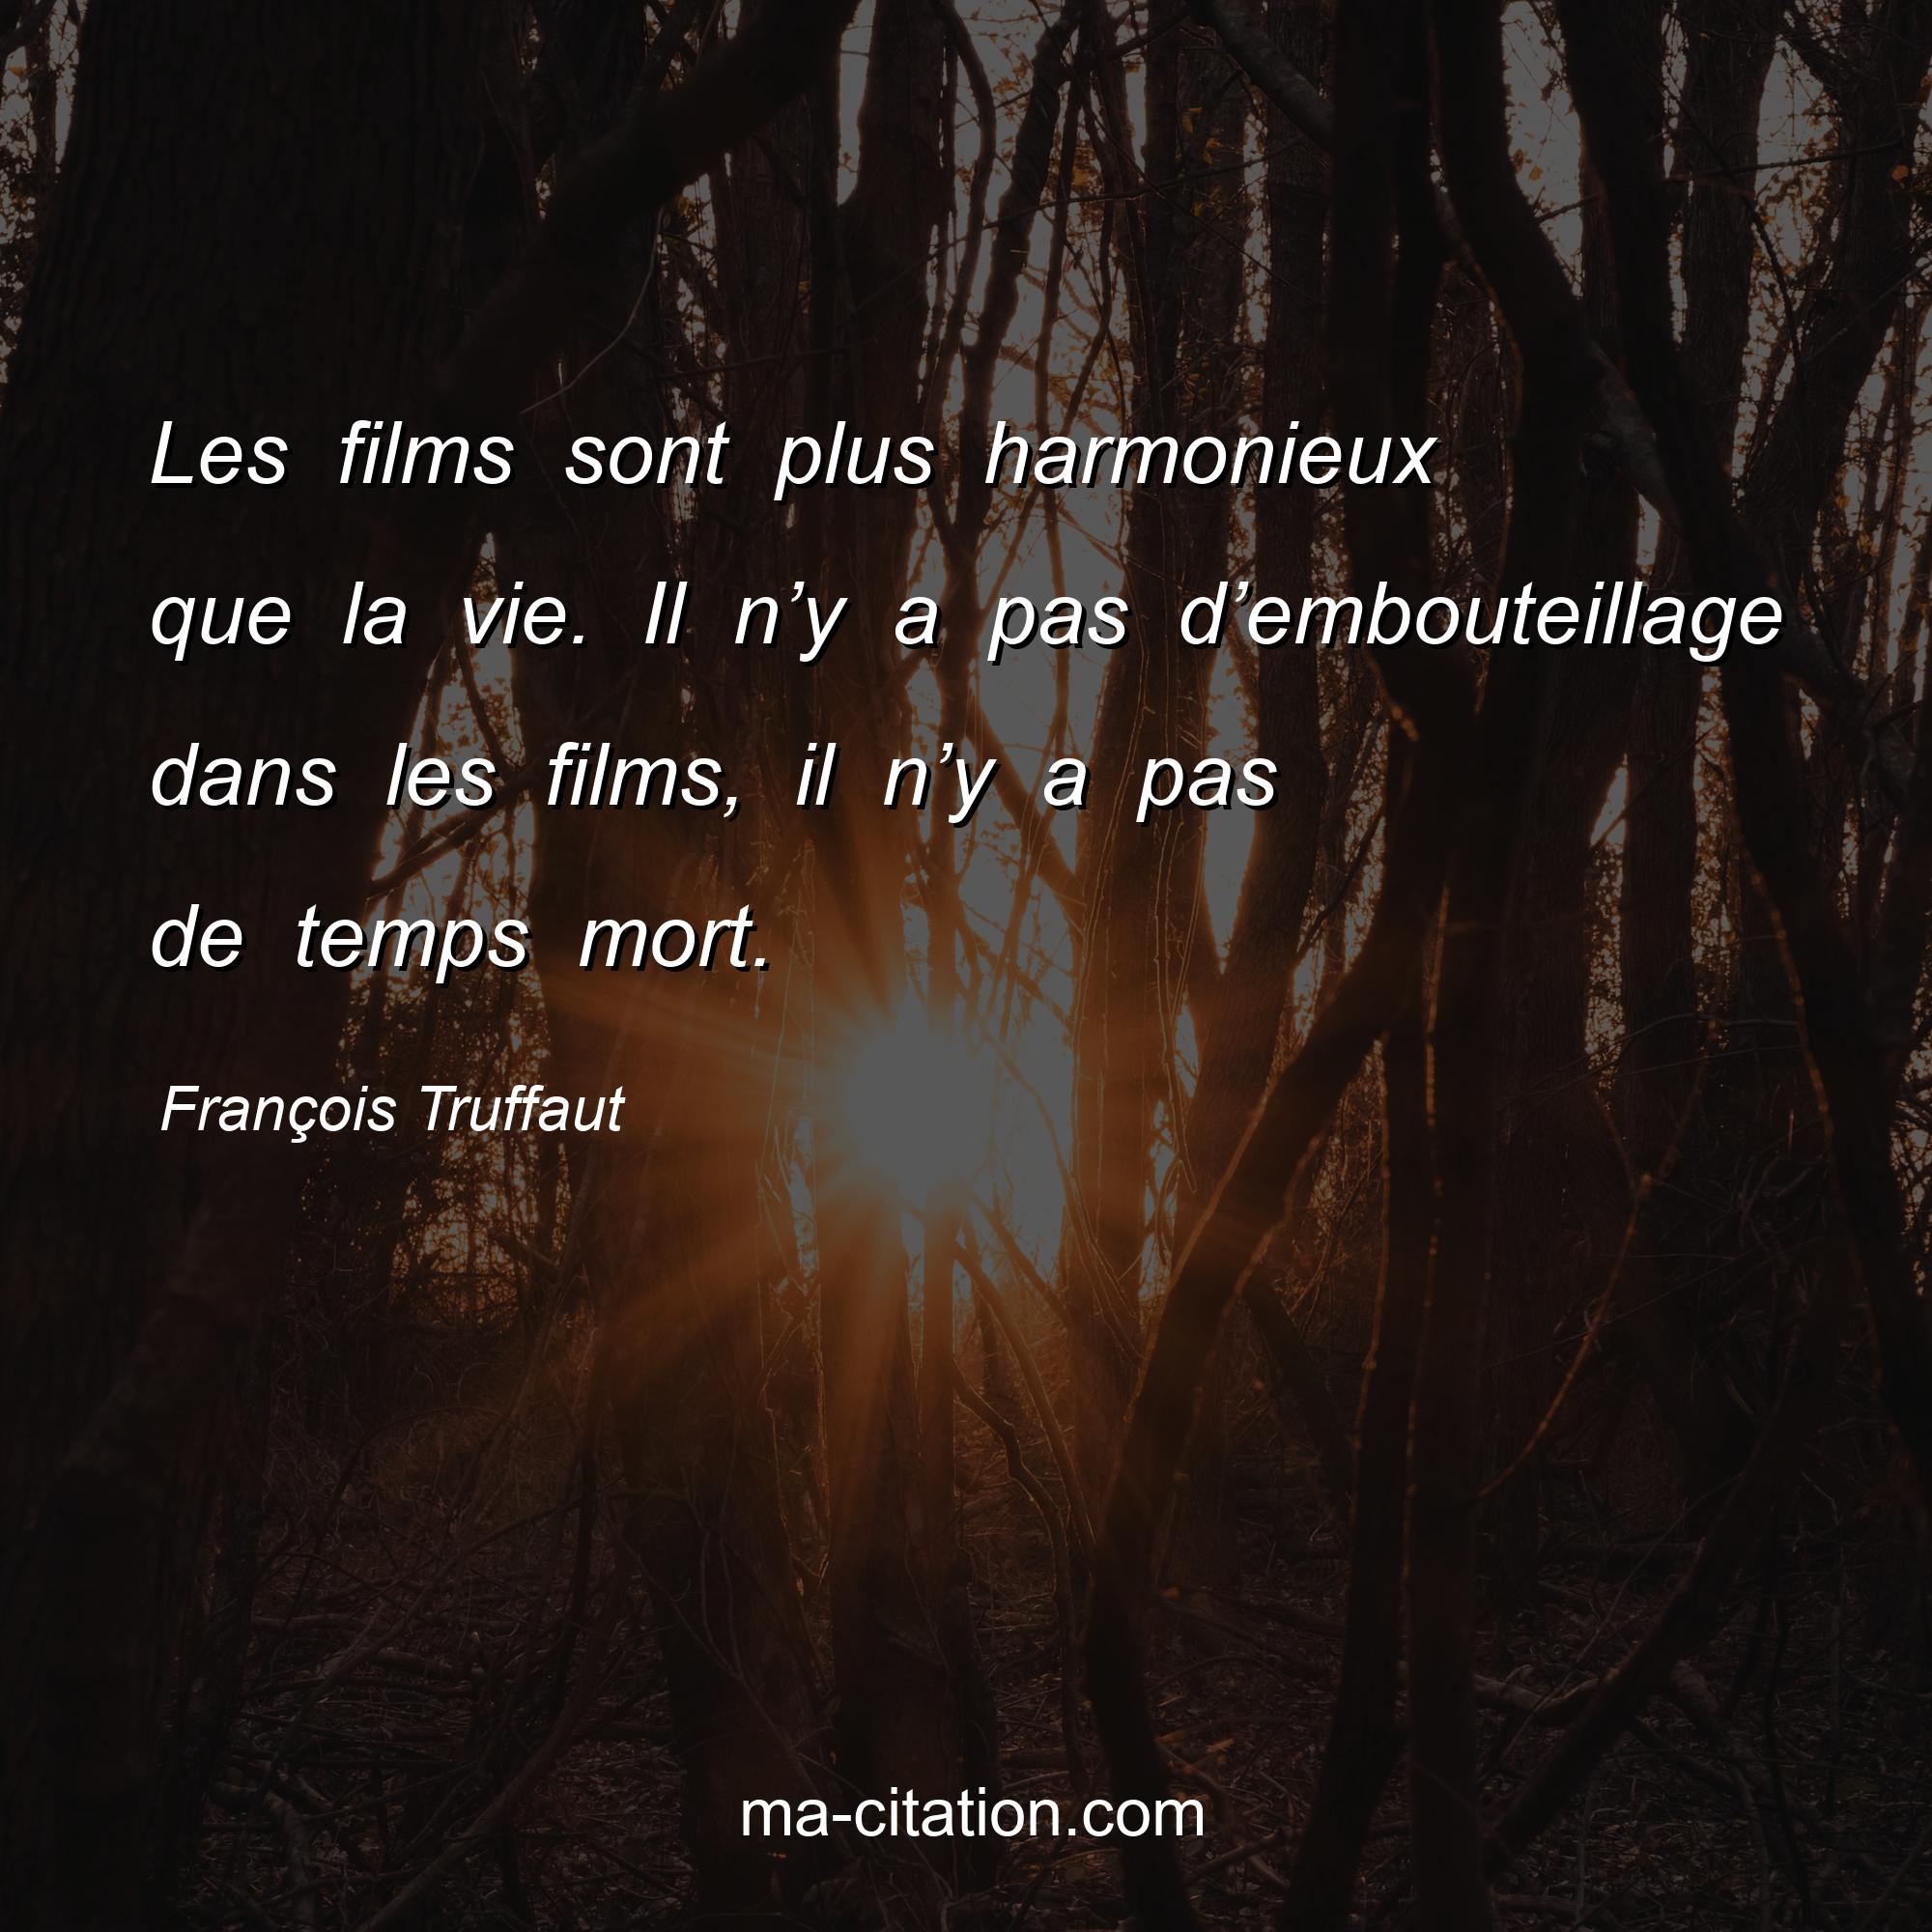 François Truffaut : Les films sont plus harmonieux que la vie. Il n’y a pas d’embouteillage dans les films, il n’y a pas de temps mort.